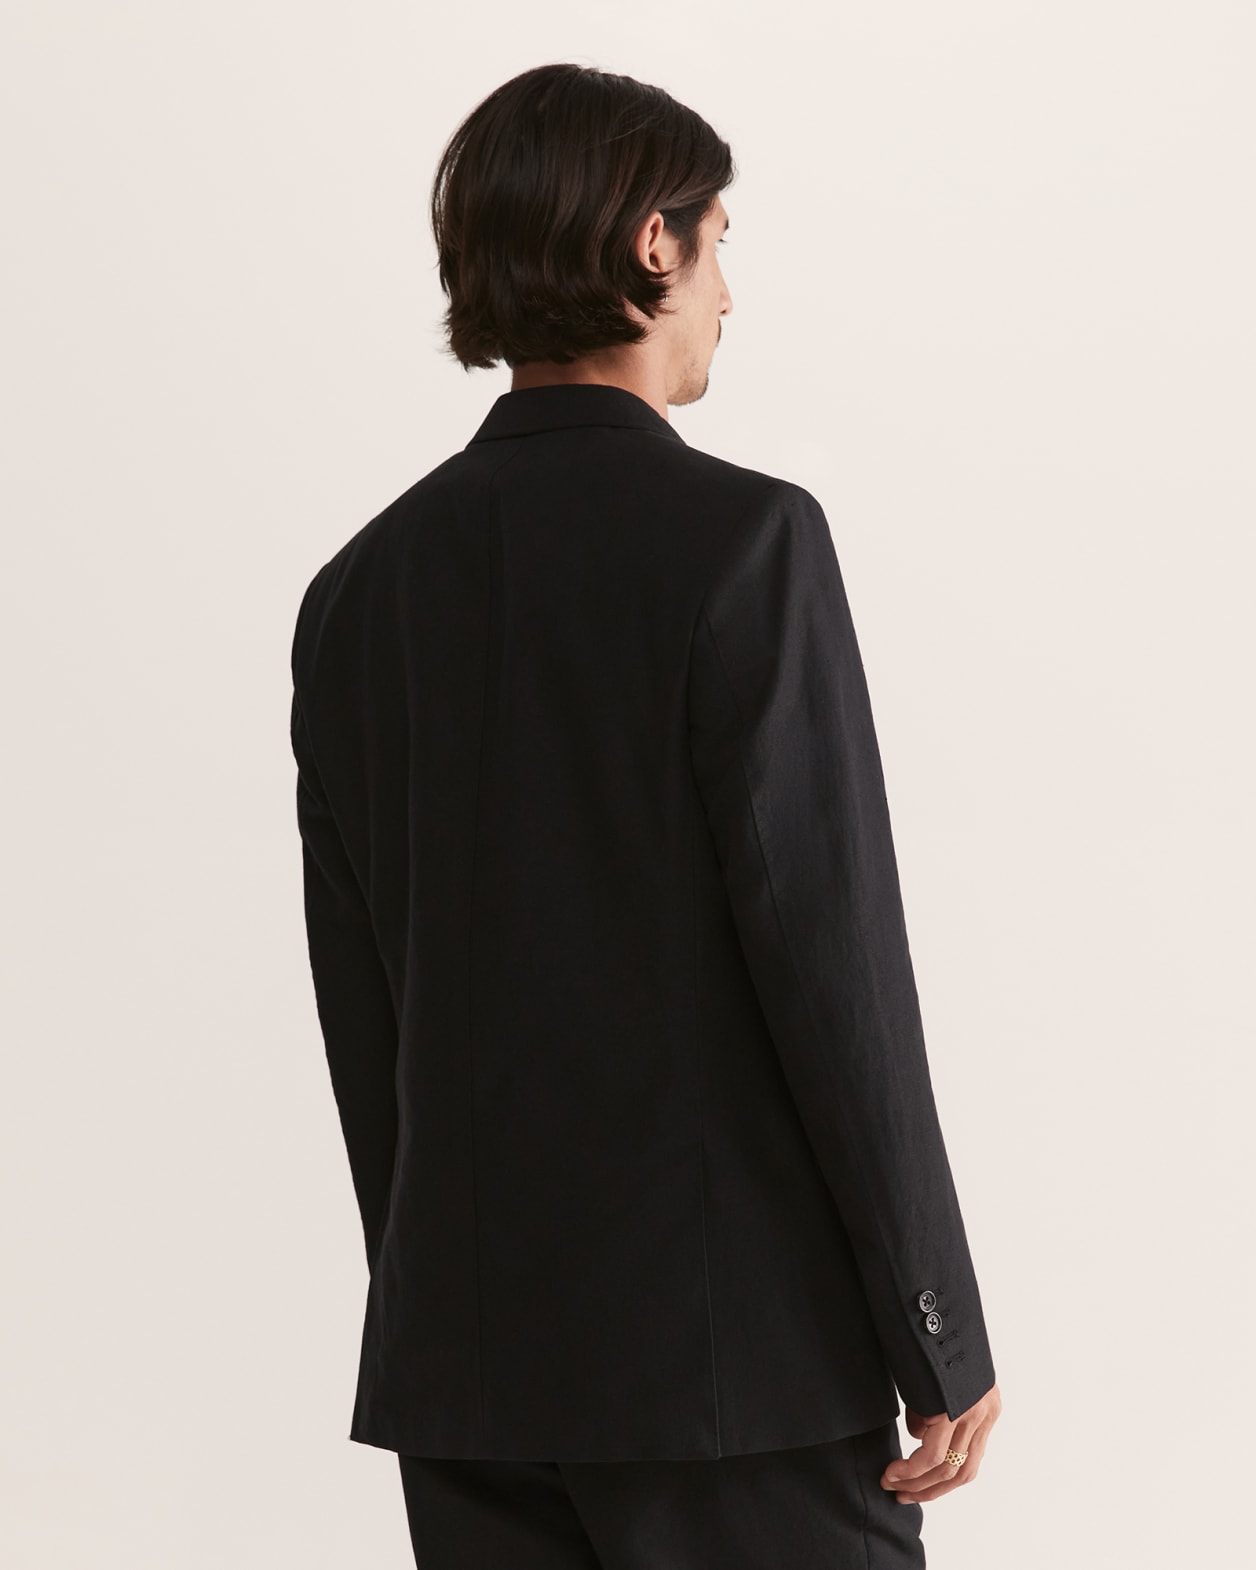 Taranto Cotton Linen Suit Jacket - SABA